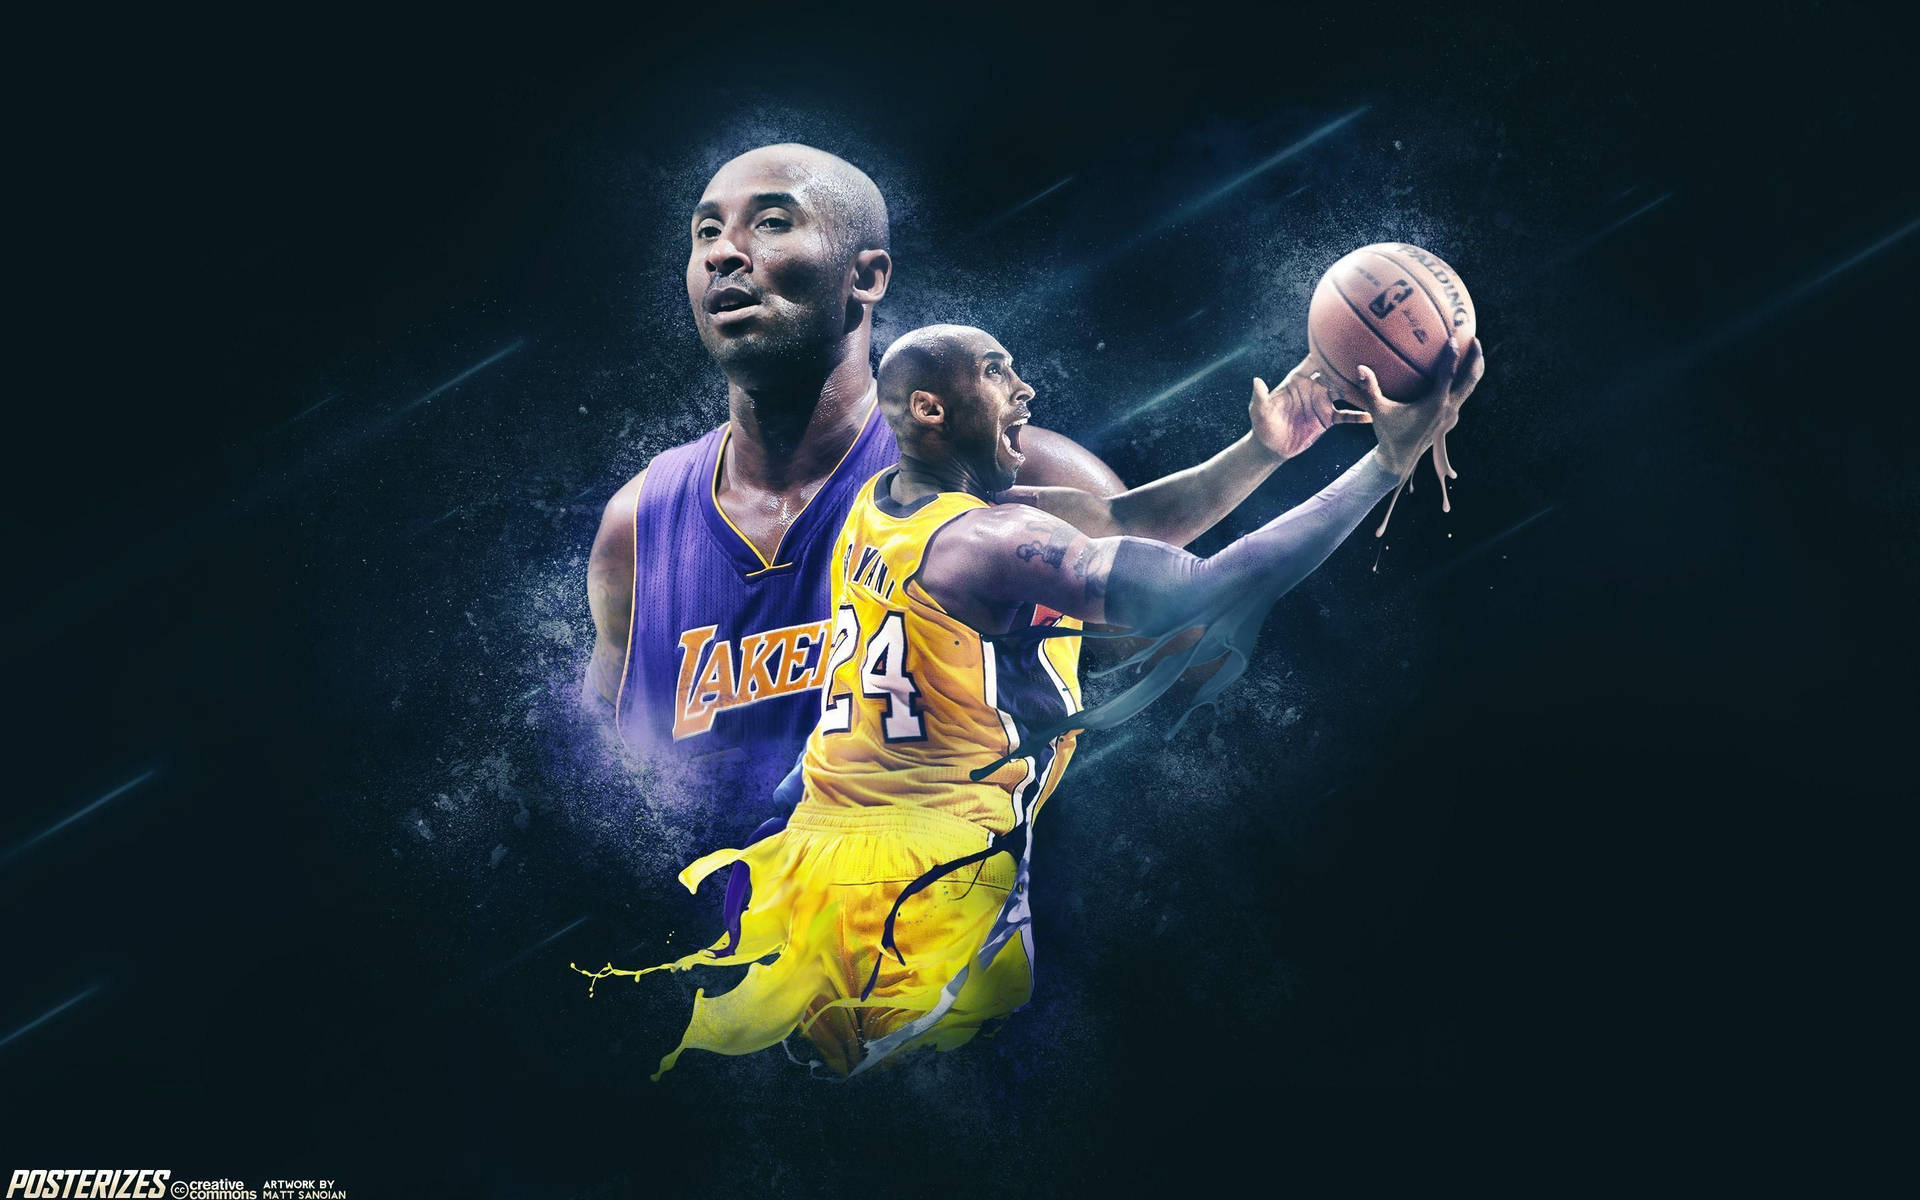 Legendary Nba Icon Kobe Bryant's Action Shot